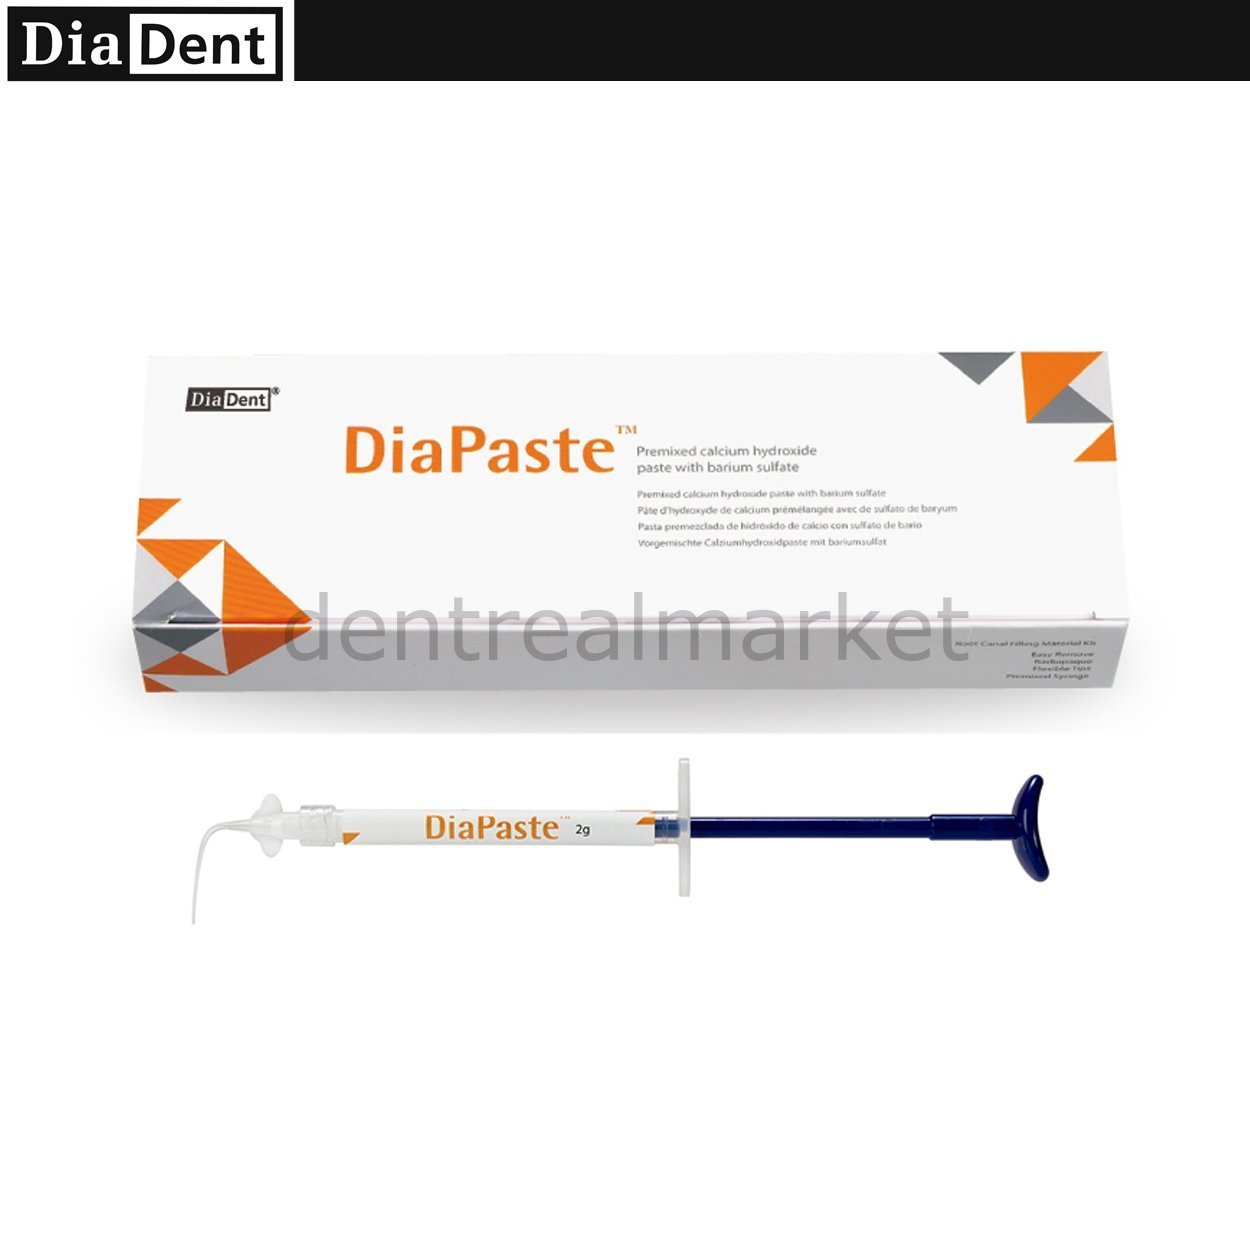 DentrealStore - Diadent Diapaste Calcium Hydroxide Paste with Barium Sulfate